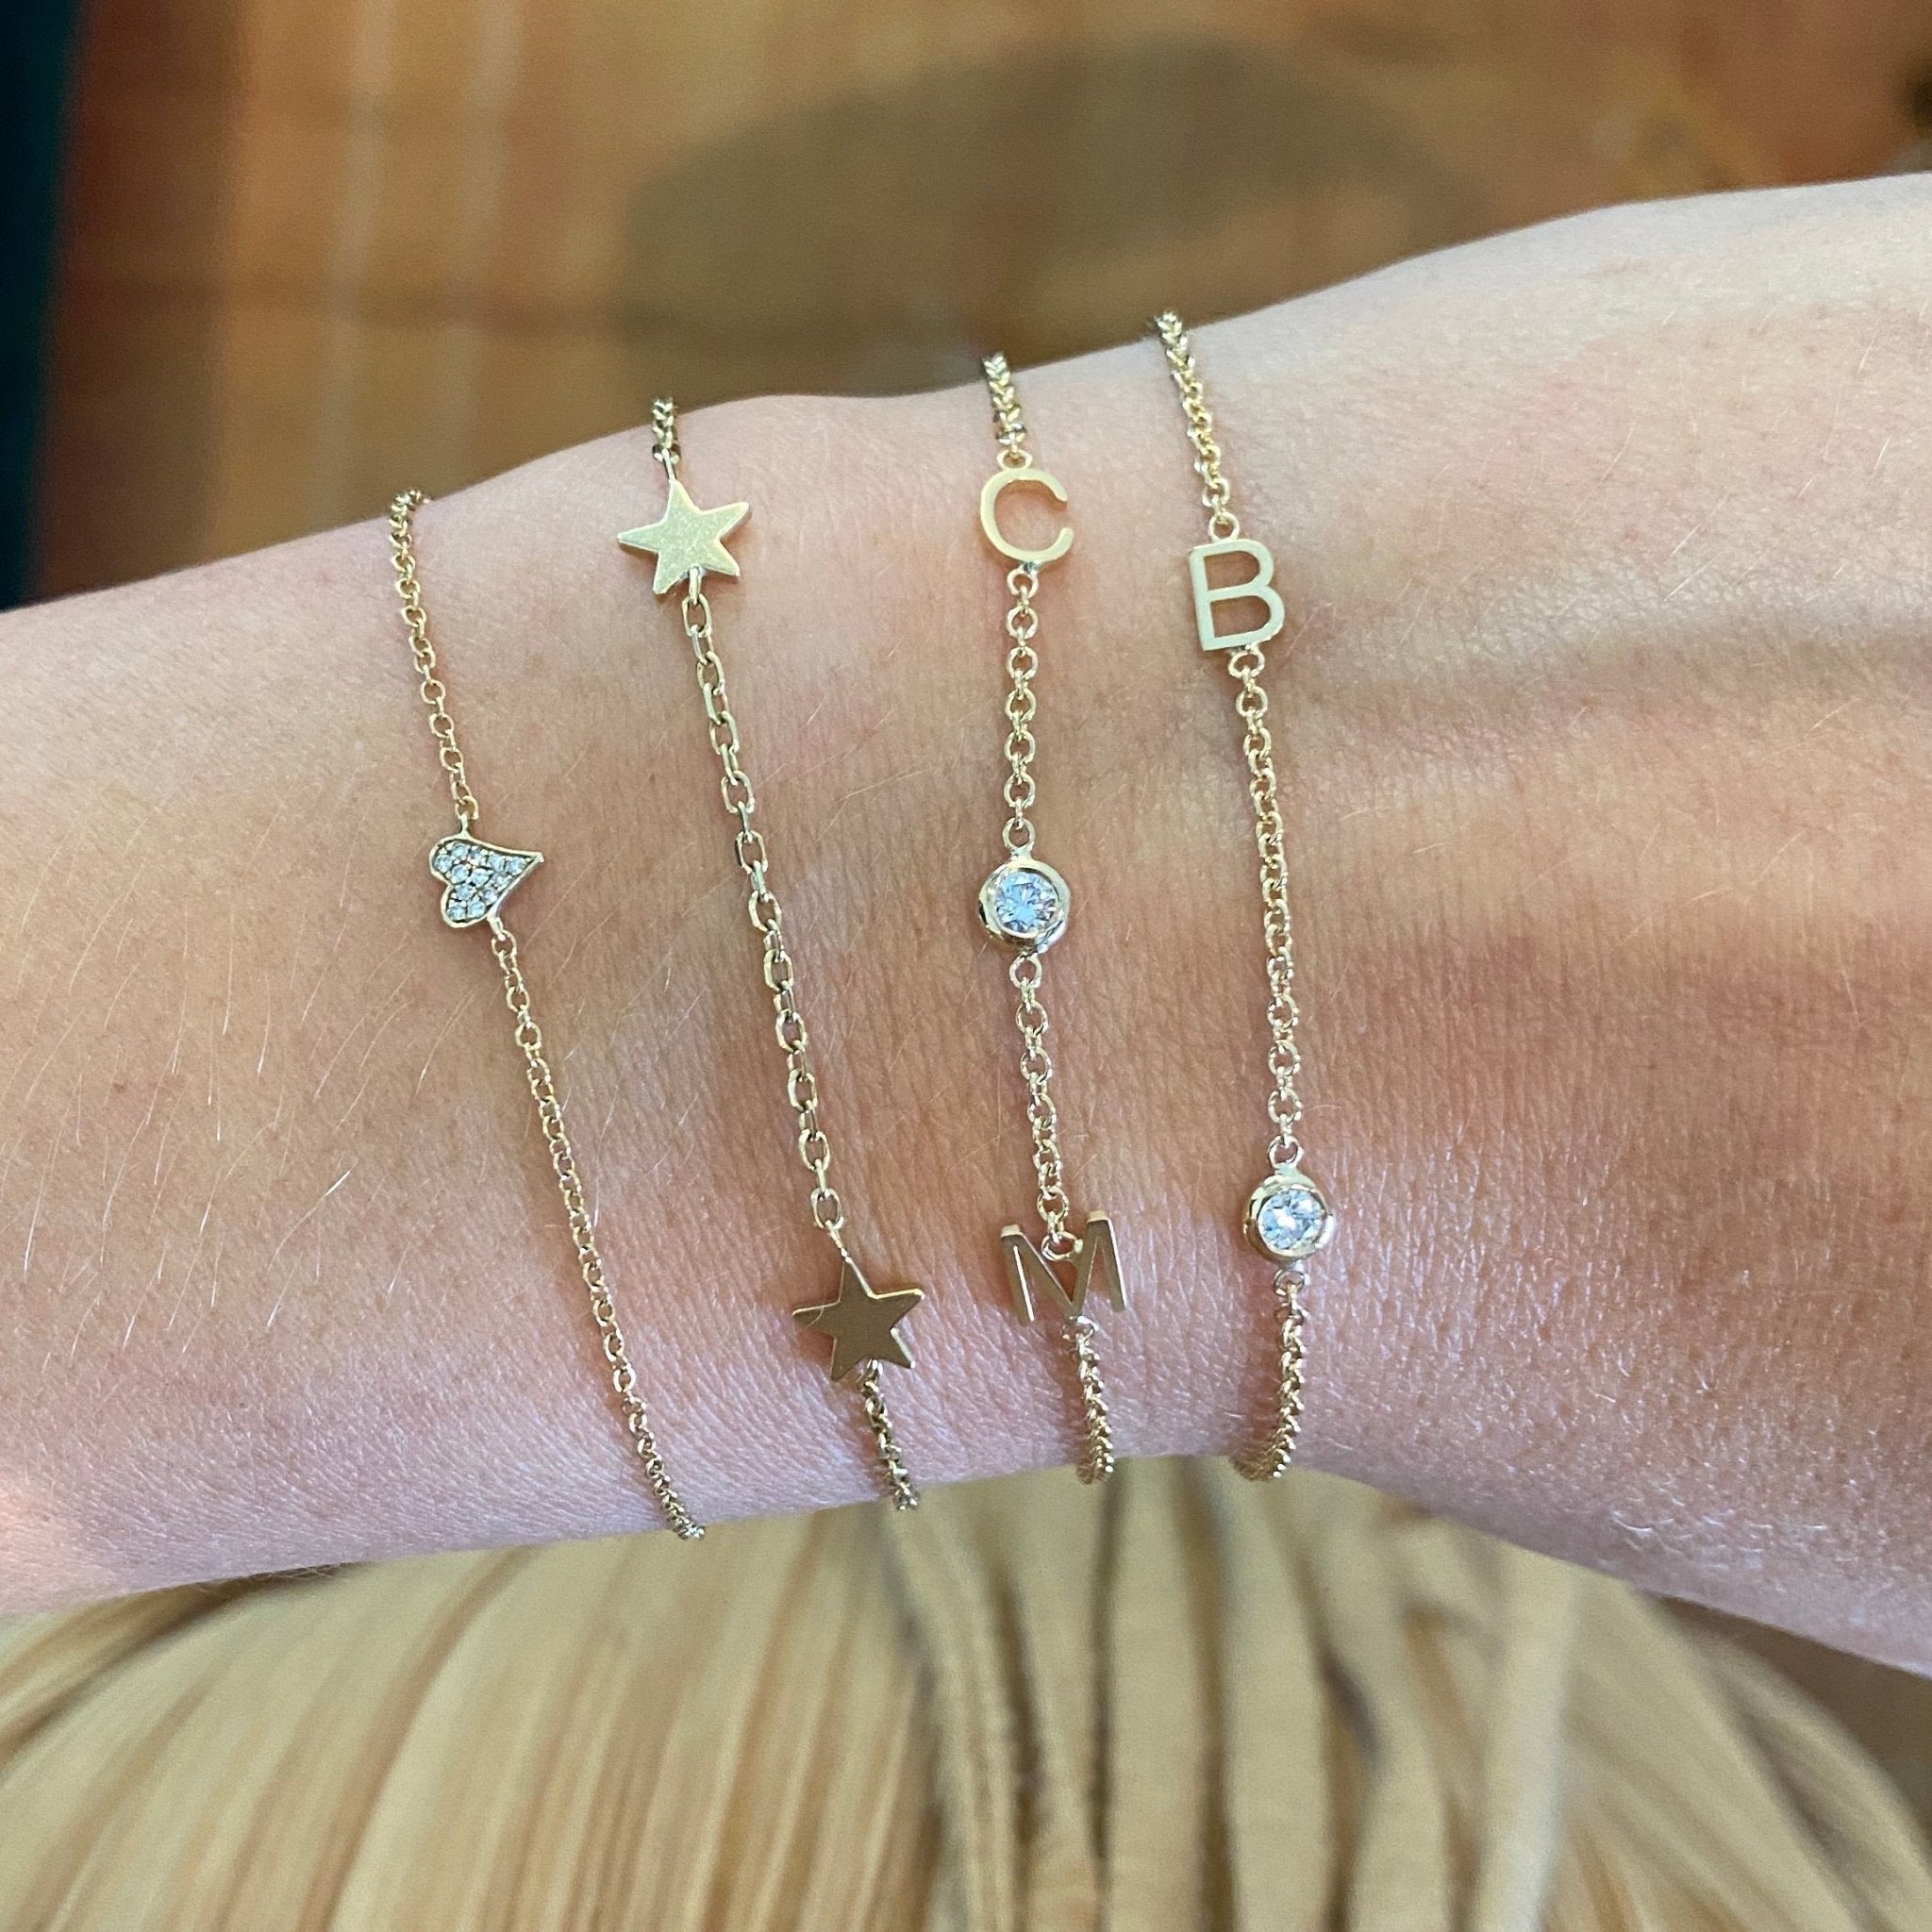 Geometric Star Bracelet,minimalist Bracelet, Sterling Silver Jewelry,  Delicate Bracelet,gift for Her, Universe Jewelry, Dainty Jewellery - Etsy